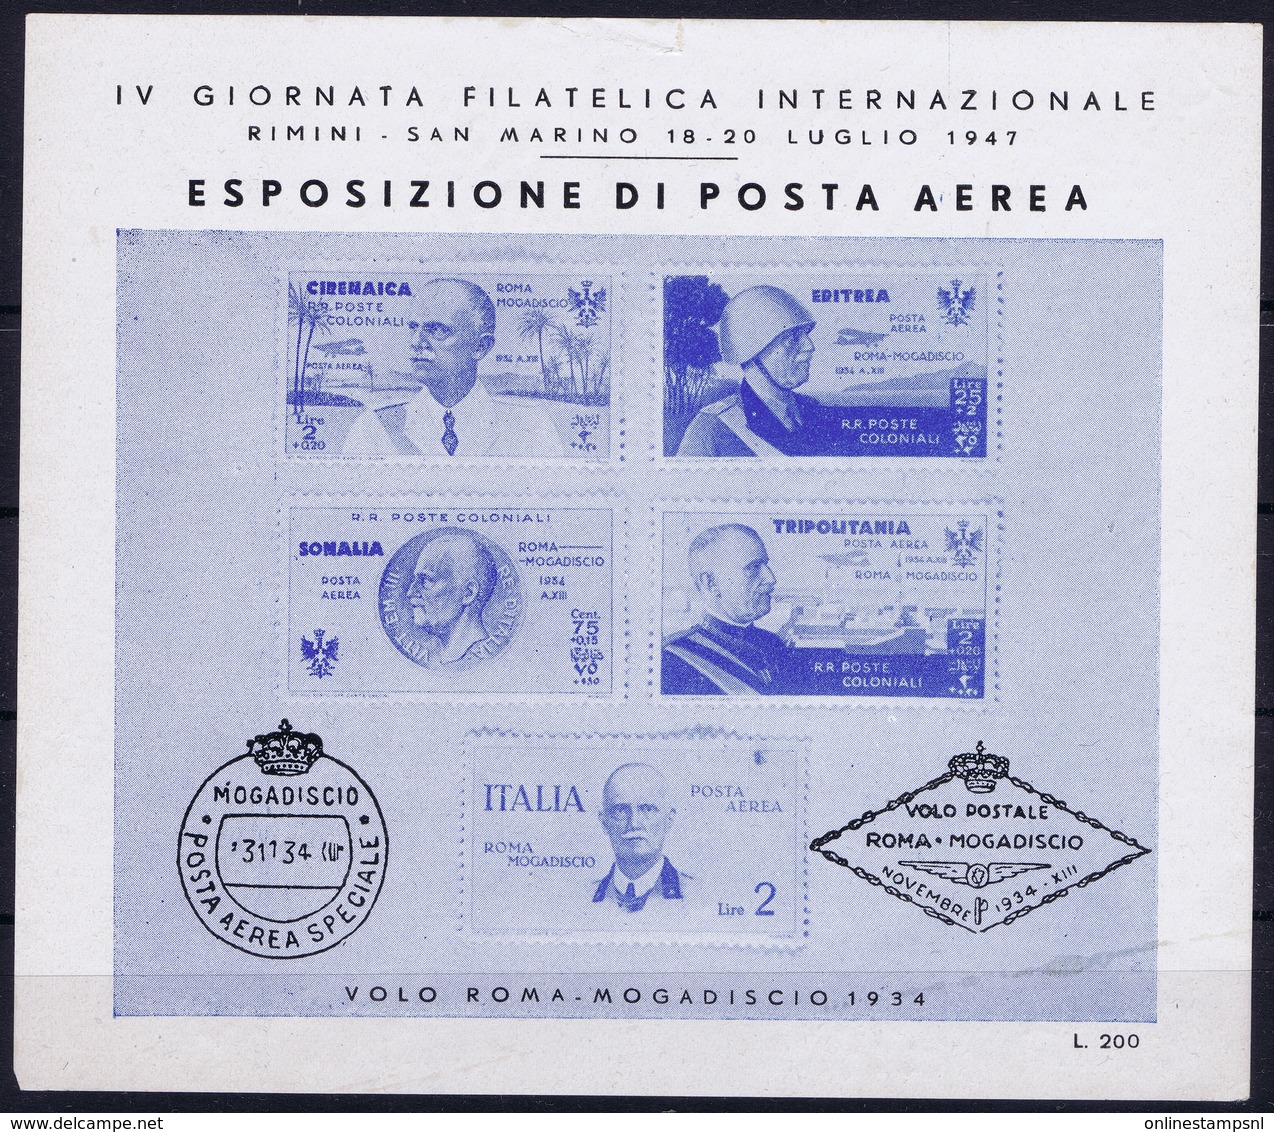 ITALY  ESPOSIZIONE DI POSTA AEREA   IV GIORNATA FILATELICA  VOLO ROMA - MOGADISCIO 1934   RIMINI S. MARINO 1947 - Airmail